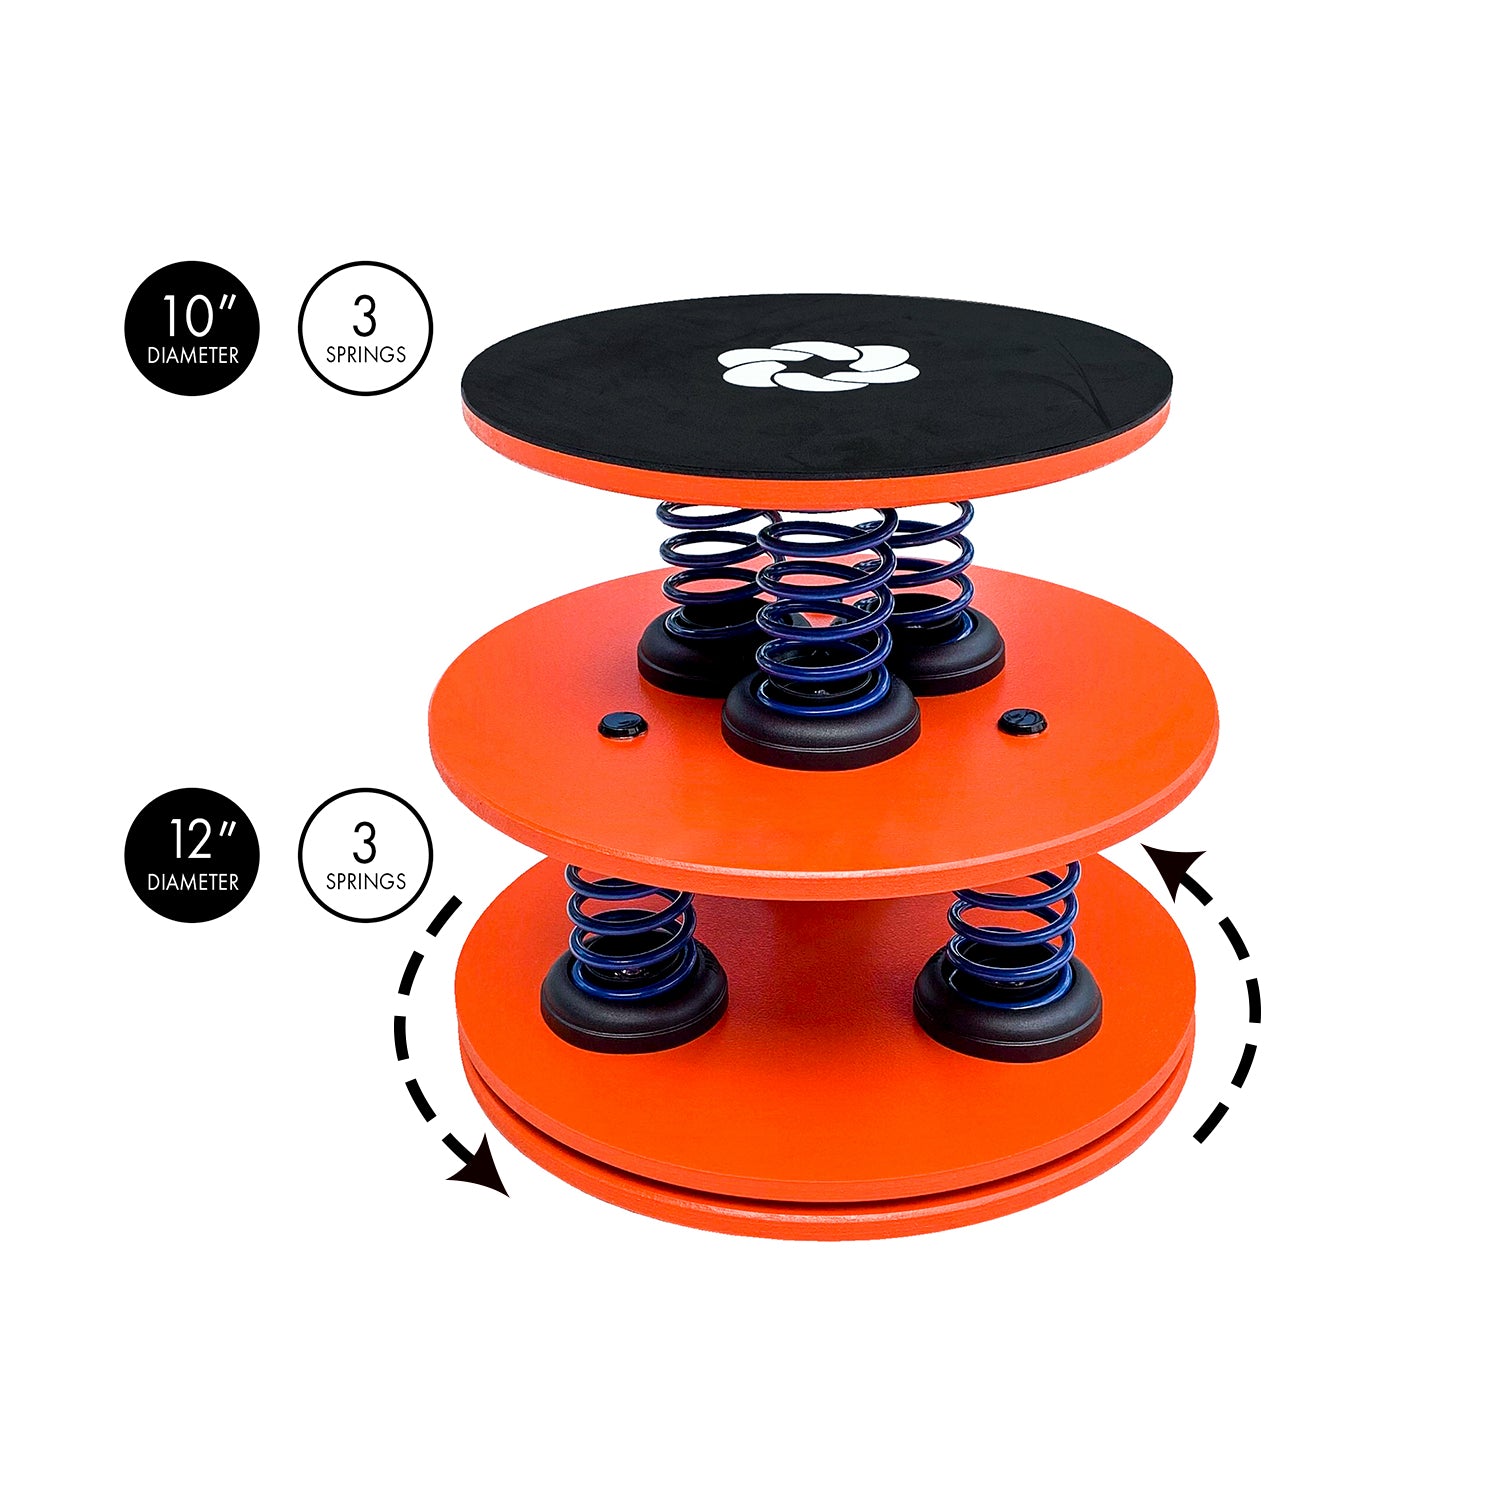 SpringCore Balance Duo Premium - Level 4 - Limit 130 pounds